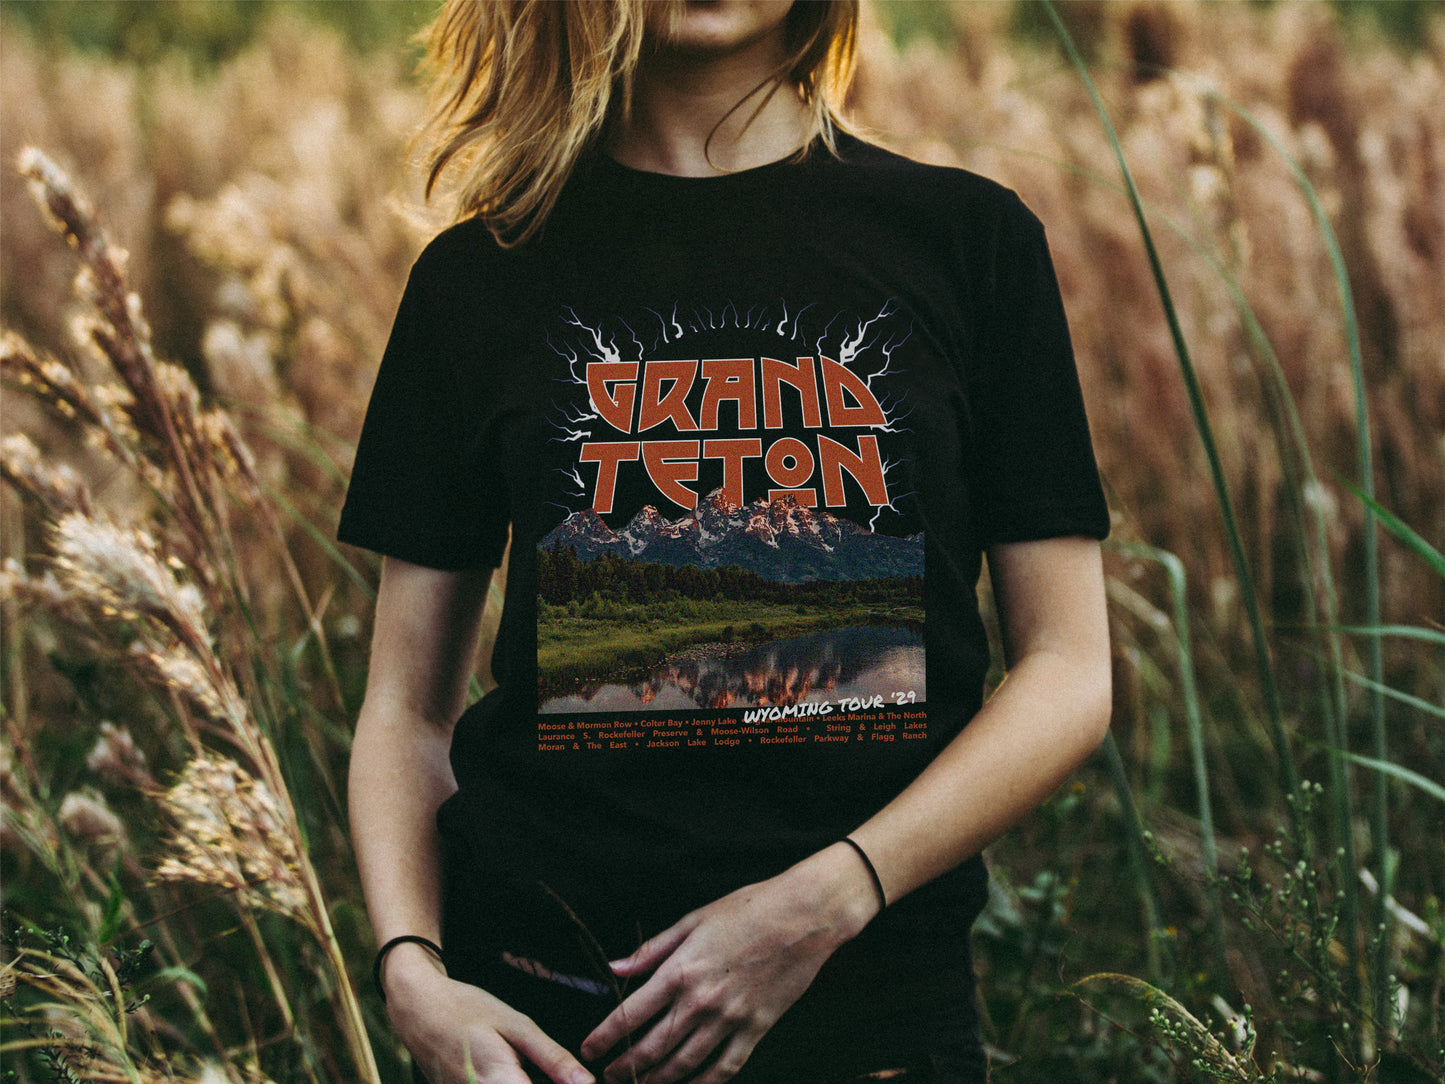 Grand Teton National Park Shirt